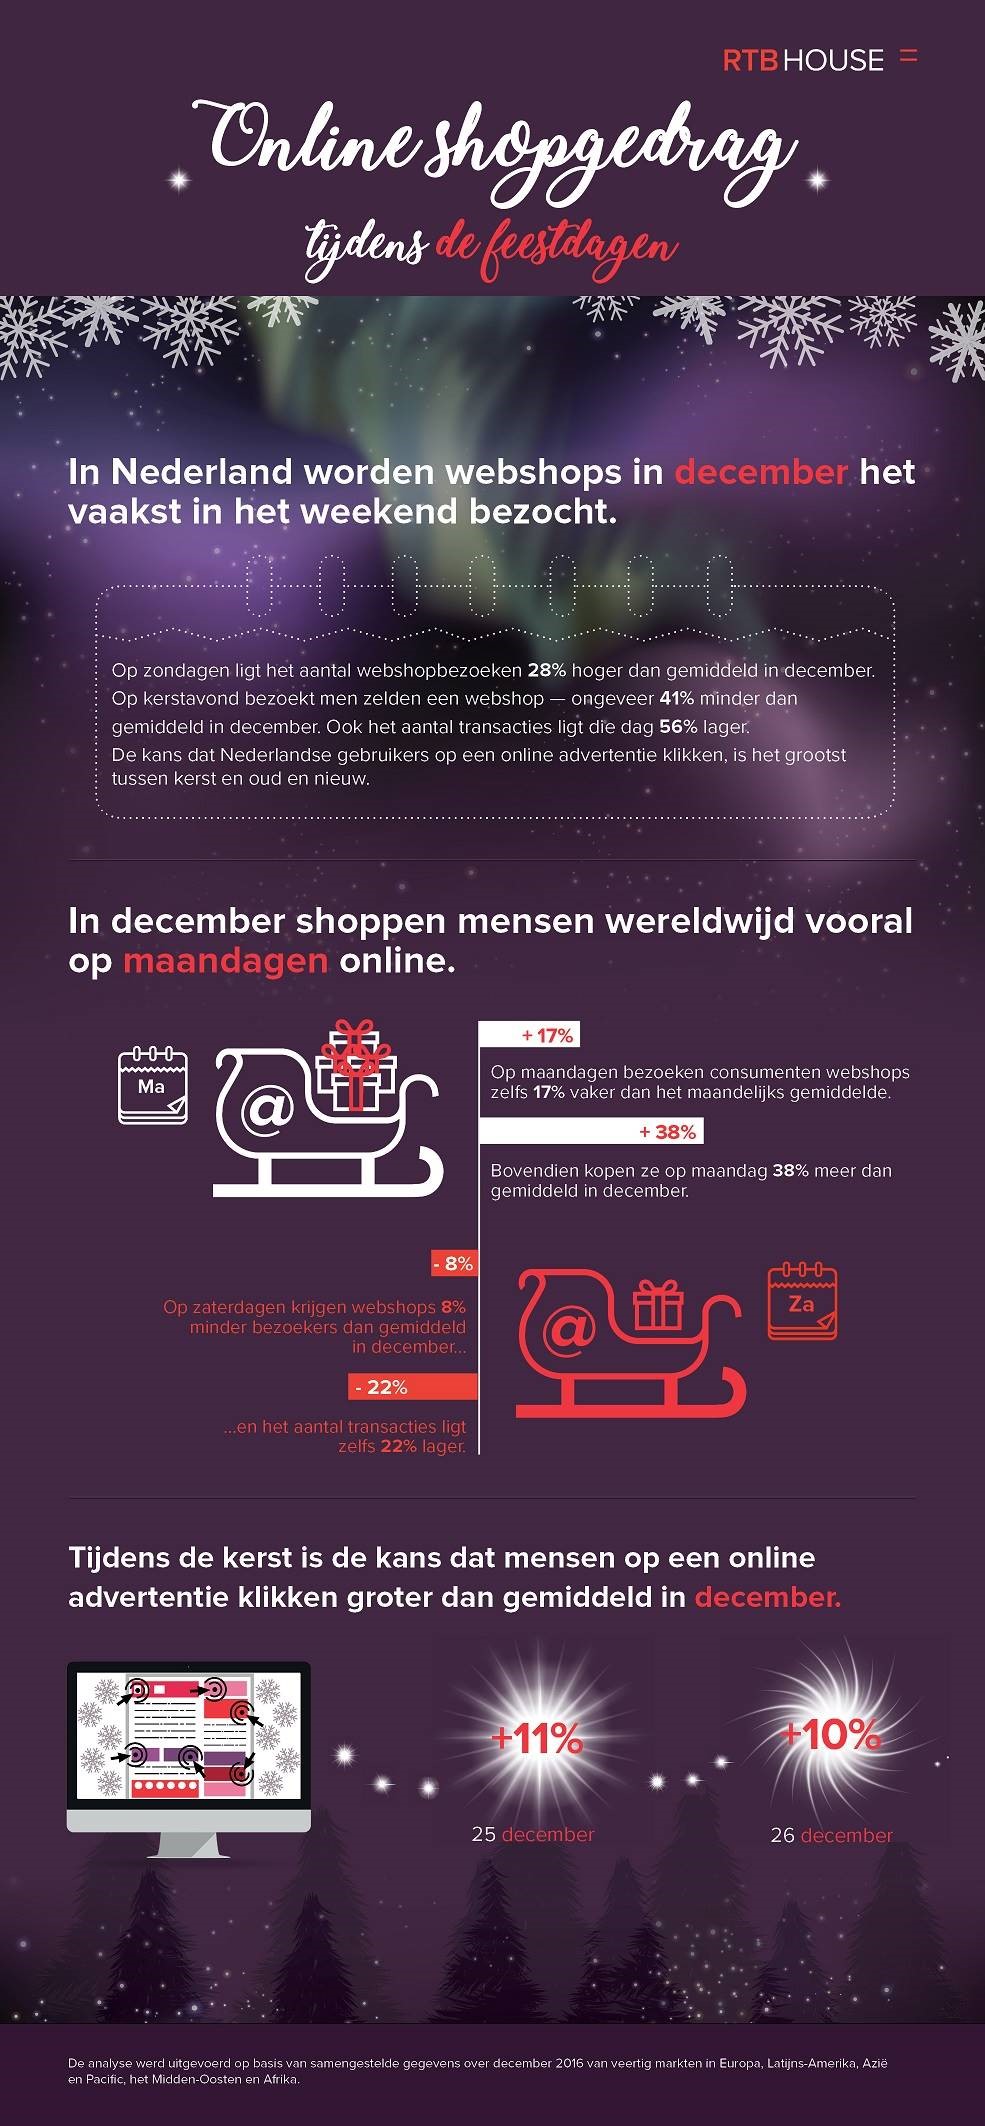 E-commerce tijdens de feestdagen: een analyse van online shopgedrag in december